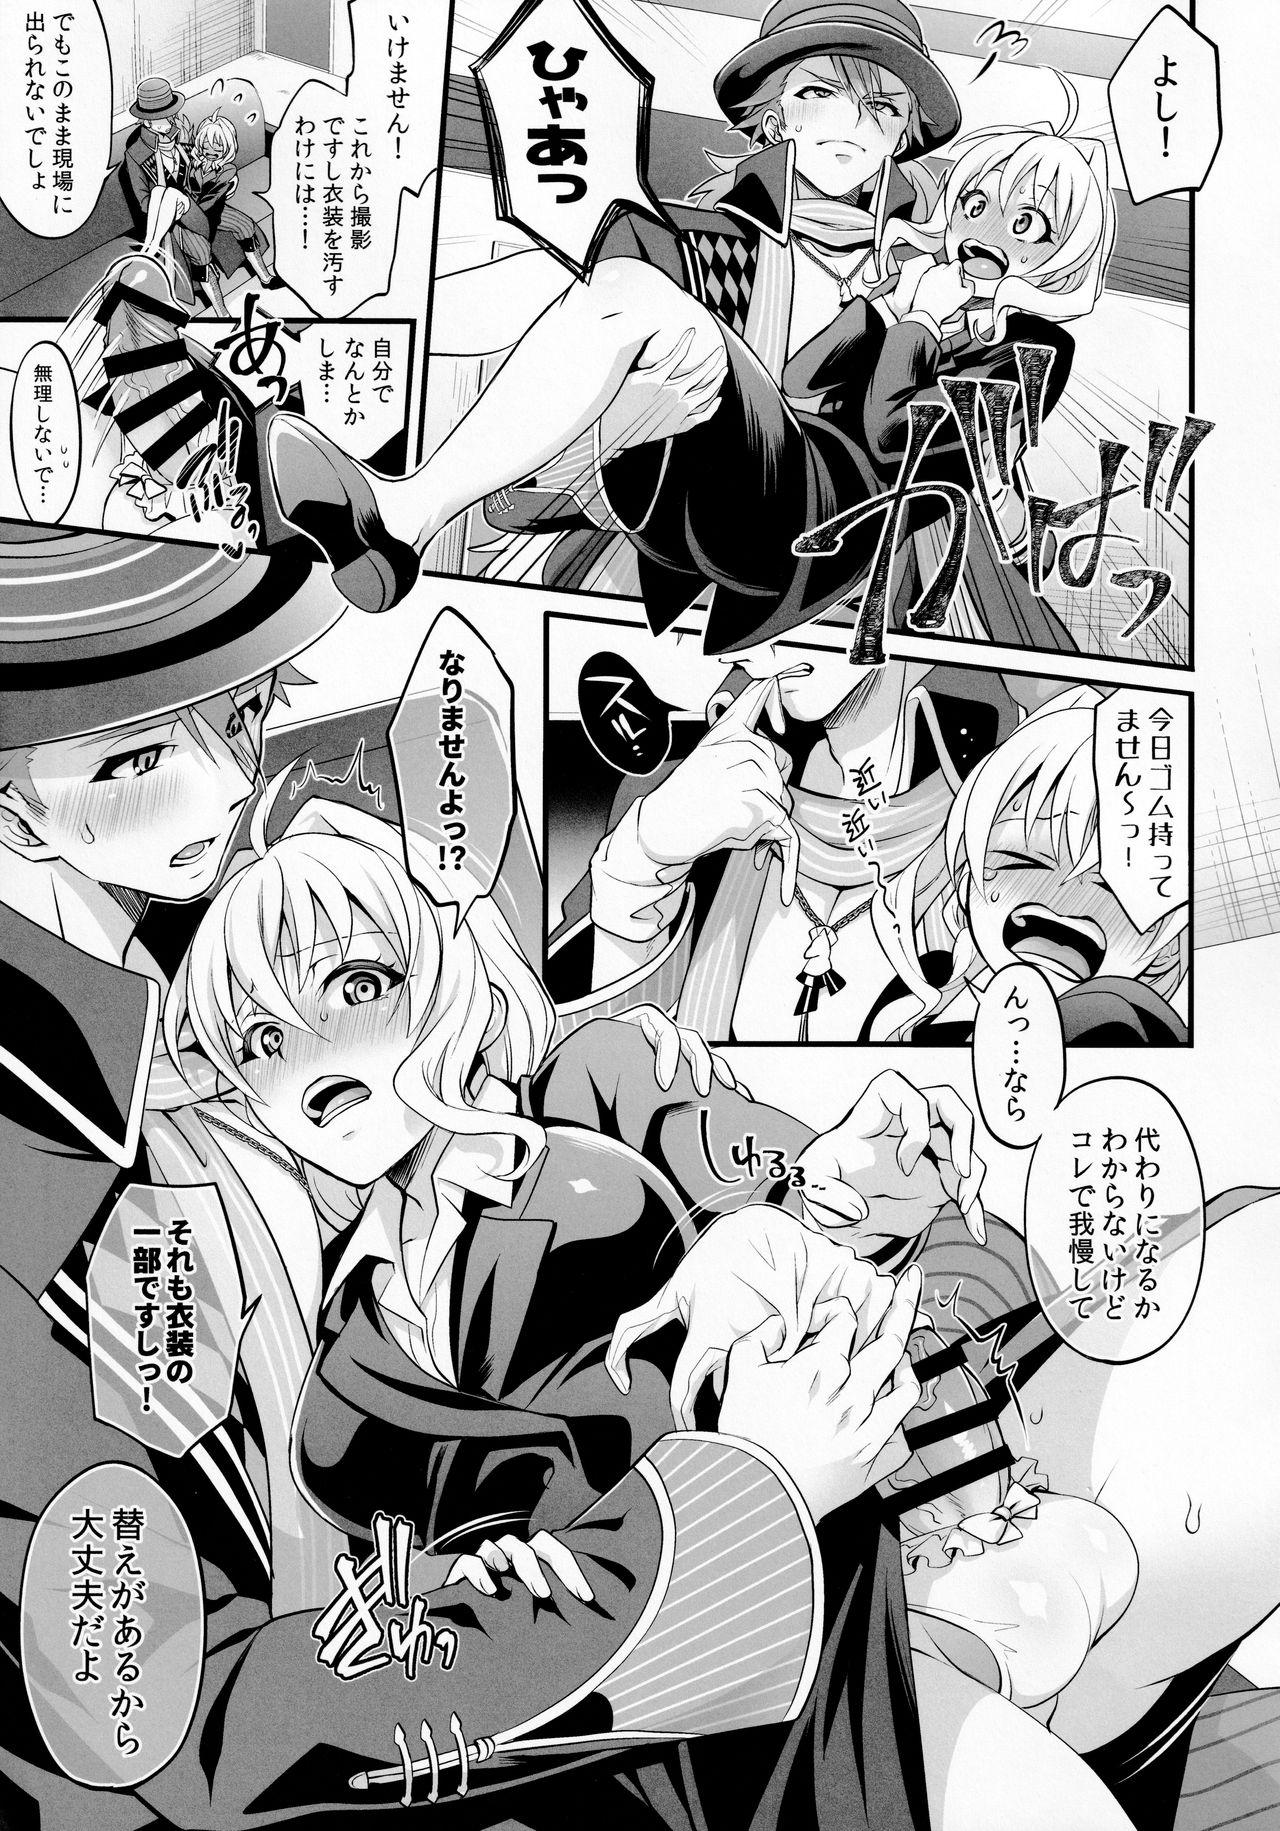 Self Watashi no Ochinchin ga Amaeta Gatterun desu! - Idolish7 Safado - Page 7